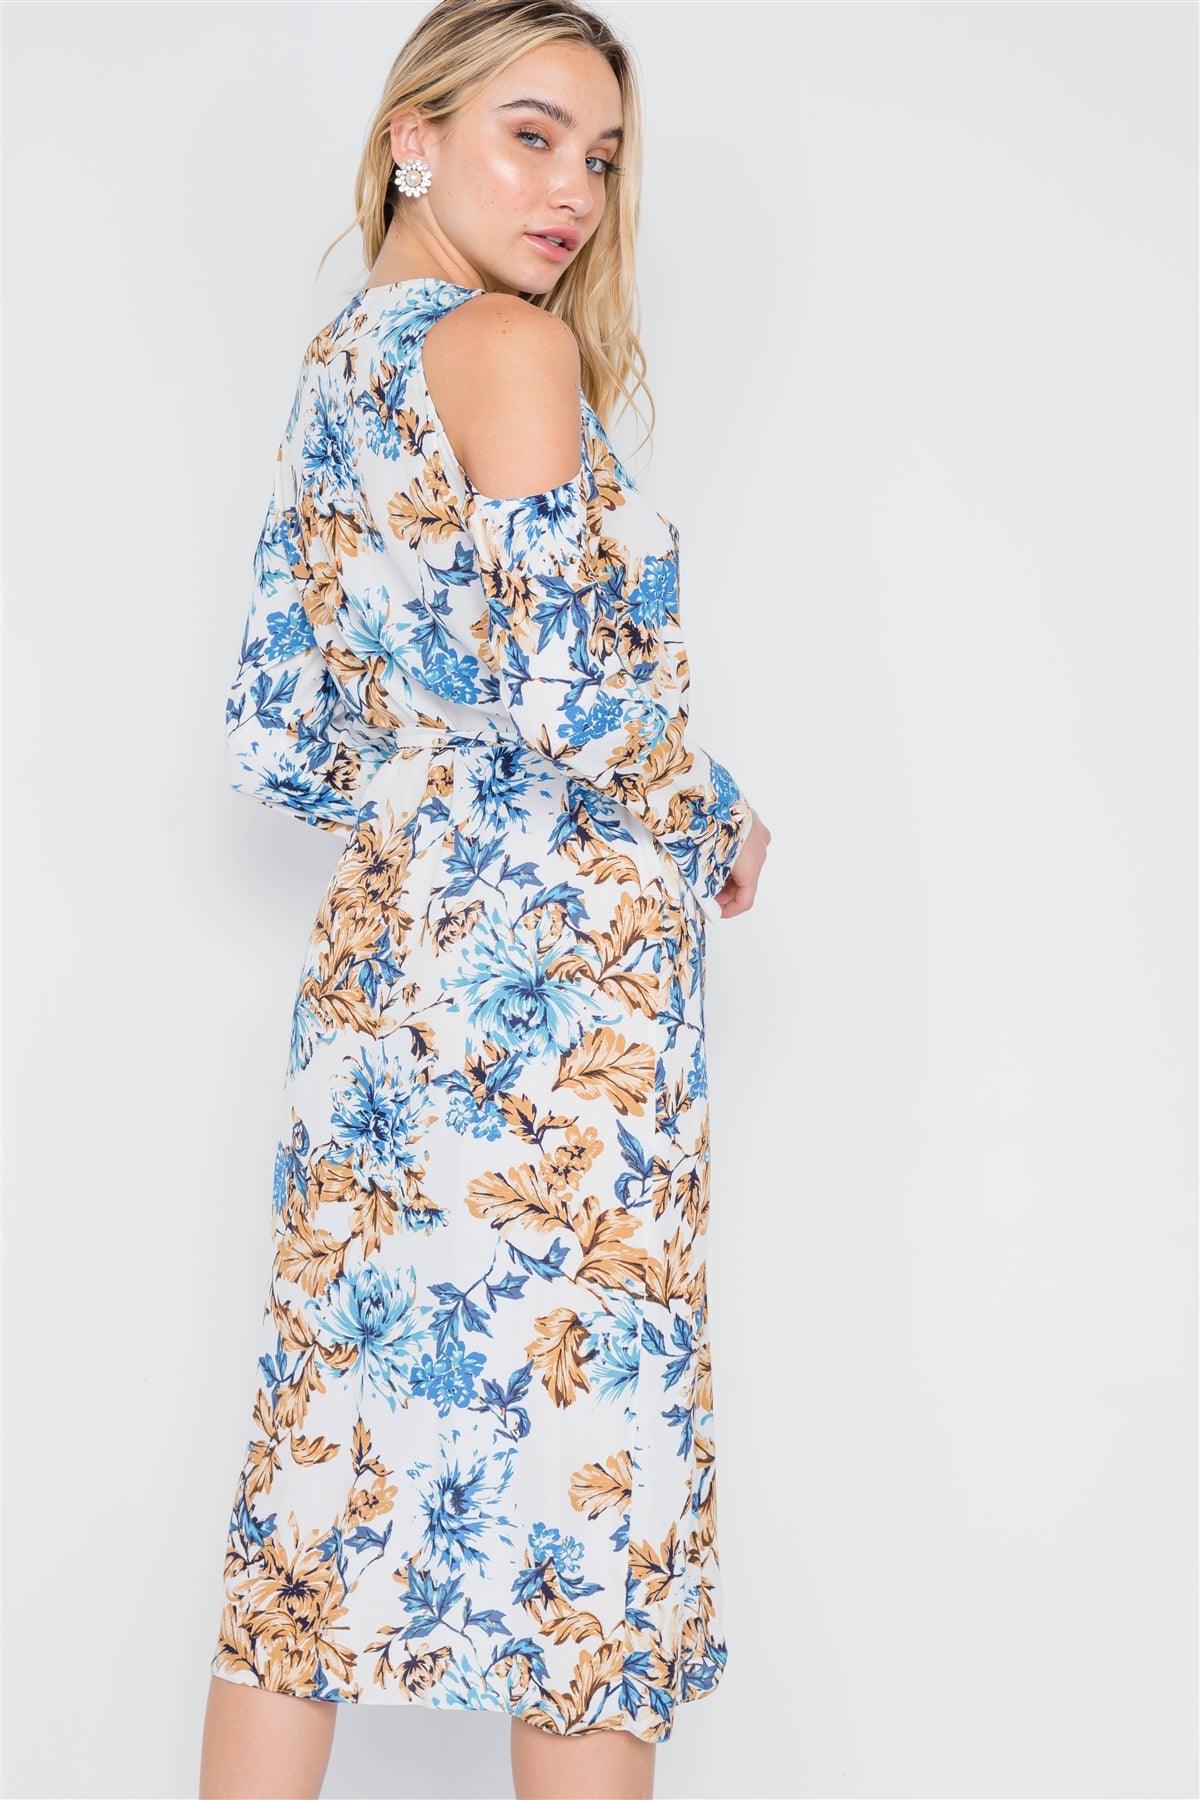 Off White Blue Floral Print Cold Shoulder Midi Dress /2-2-1